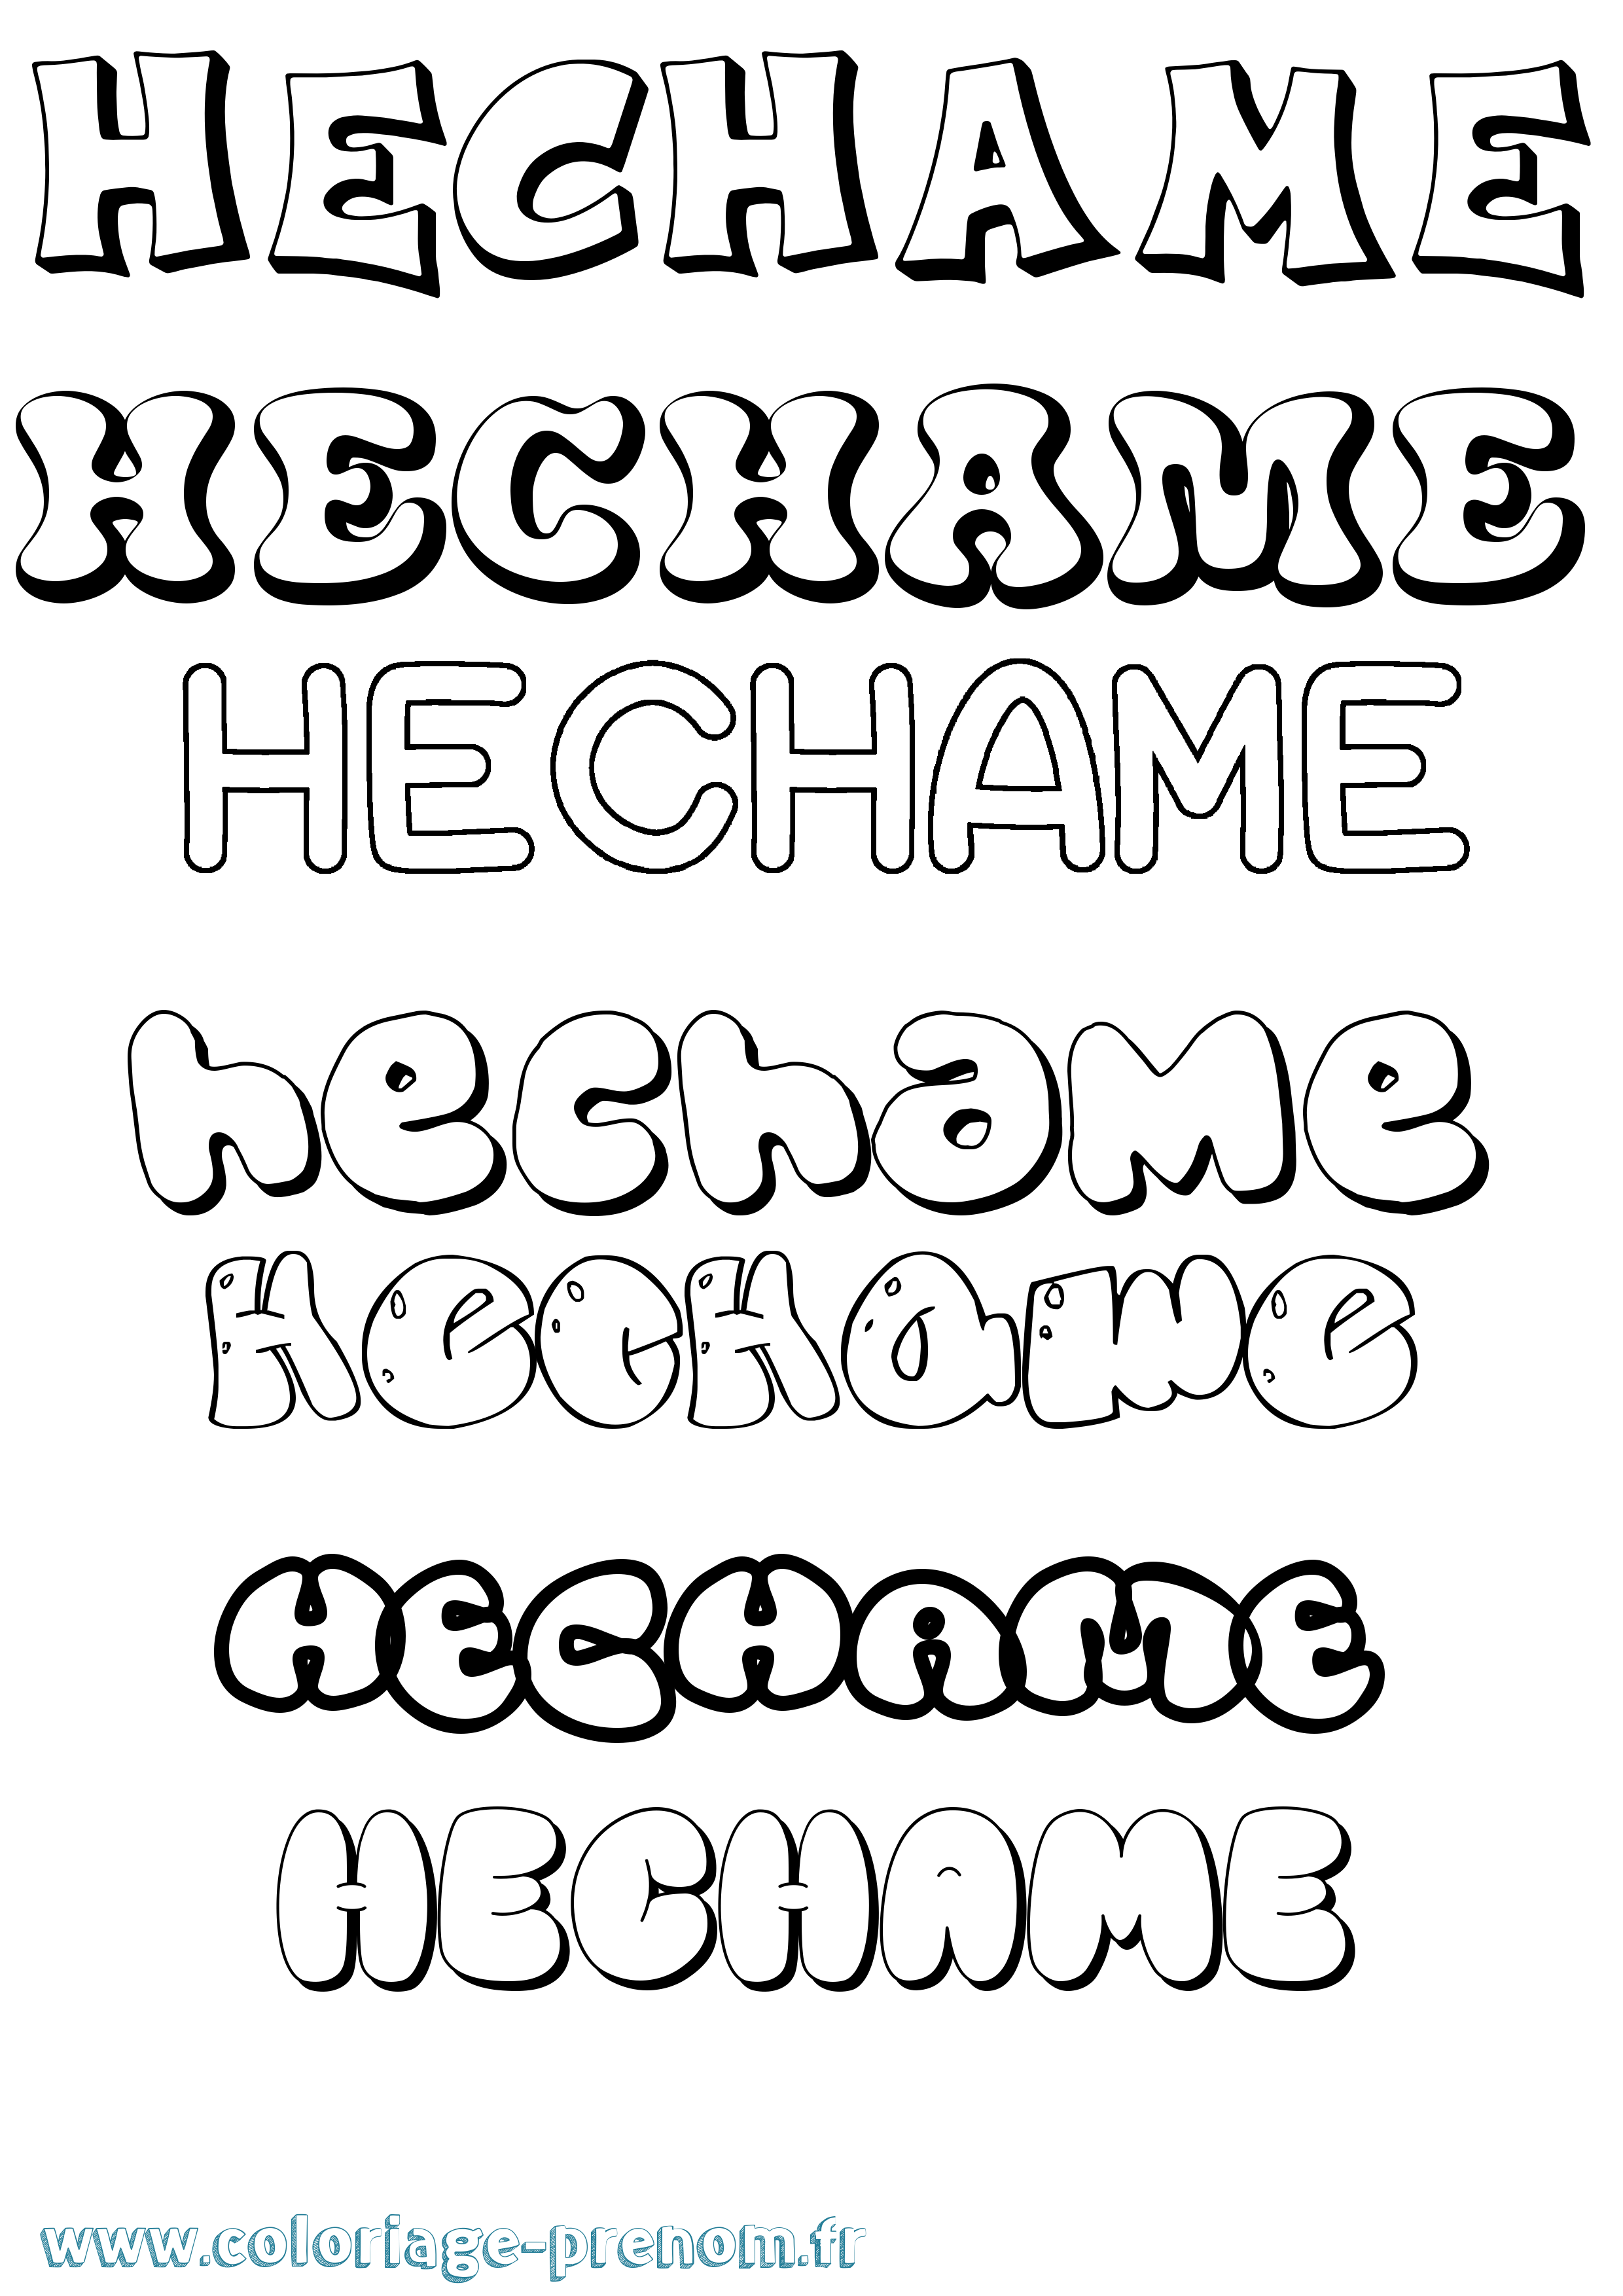 Coloriage prénom Hechame Bubble